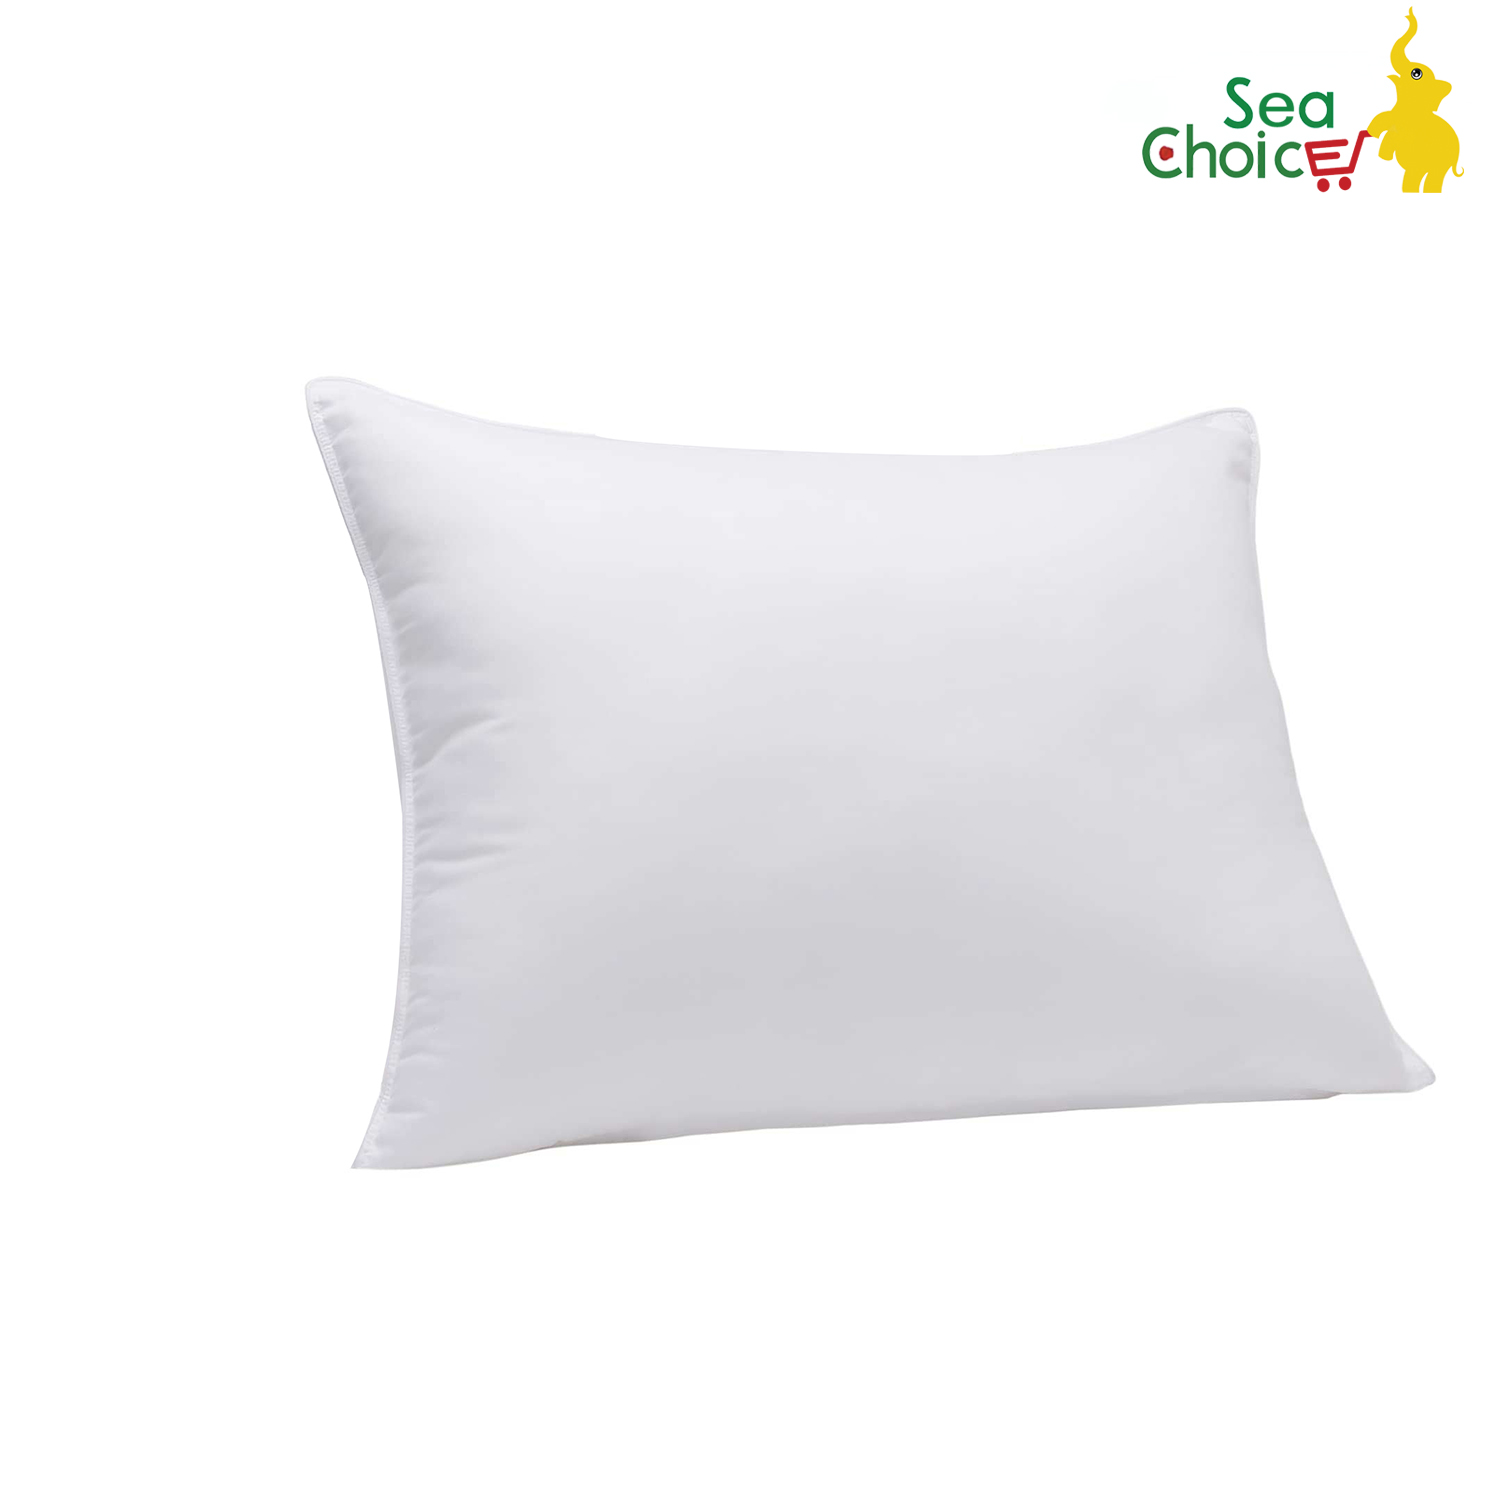 Gối giường Sea Choice cổ điển màu trắng để ngủ Gối làm bằng sợi polyester 100% Gối nằm điều hoà kích thước 50x75cm